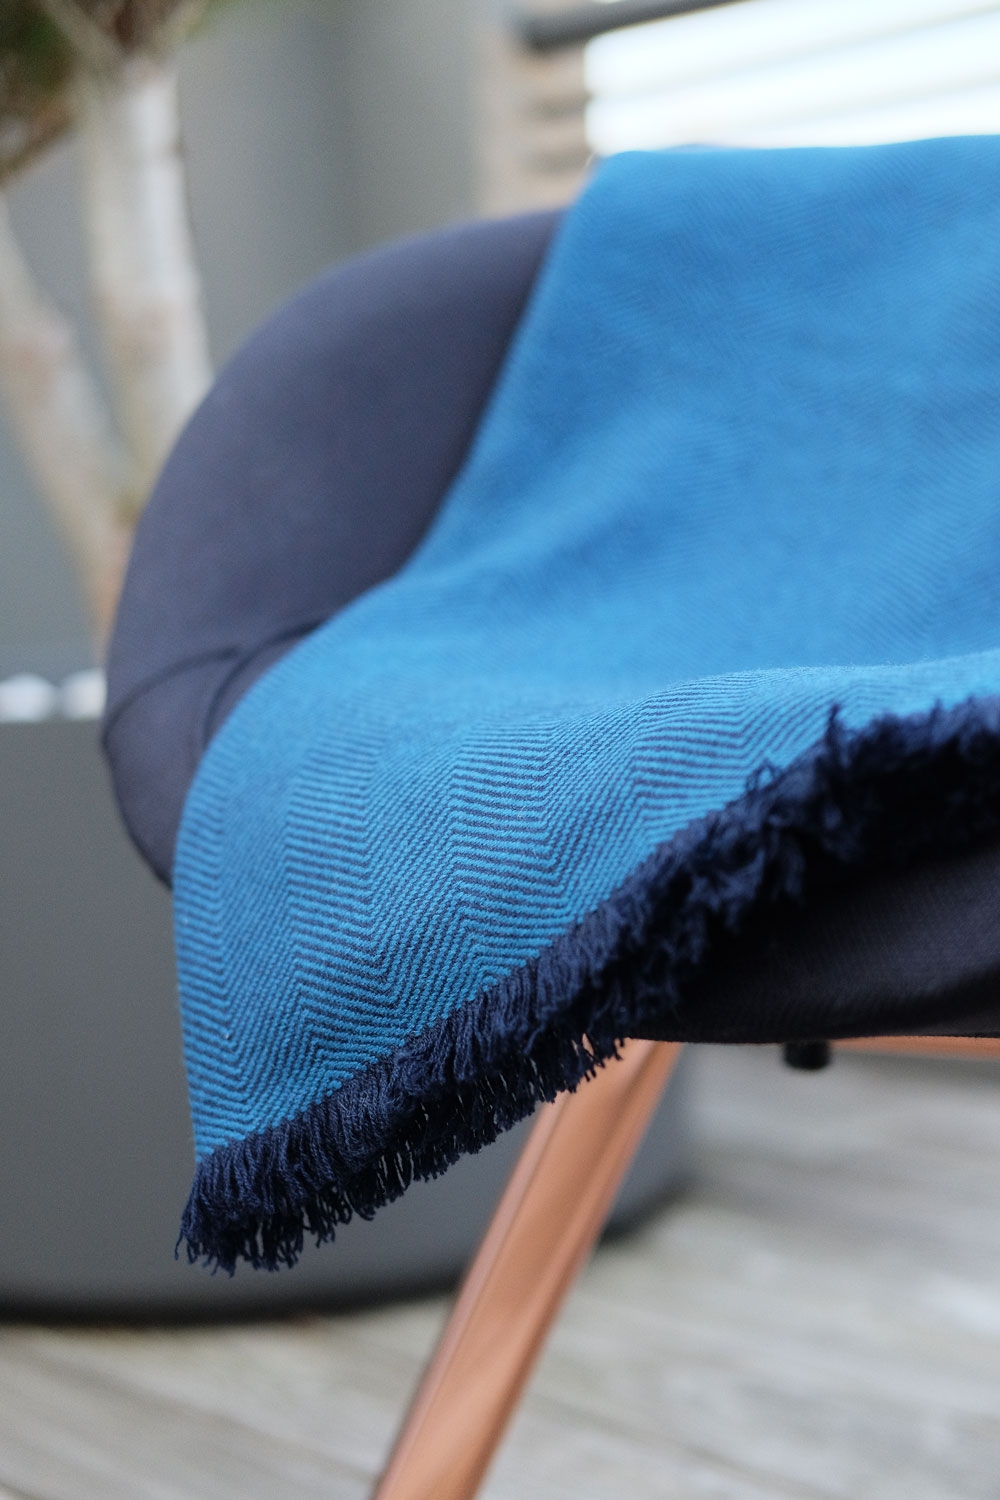 Cashmere accessories blanket erable 130 x 190 blue 130 x 190 cm